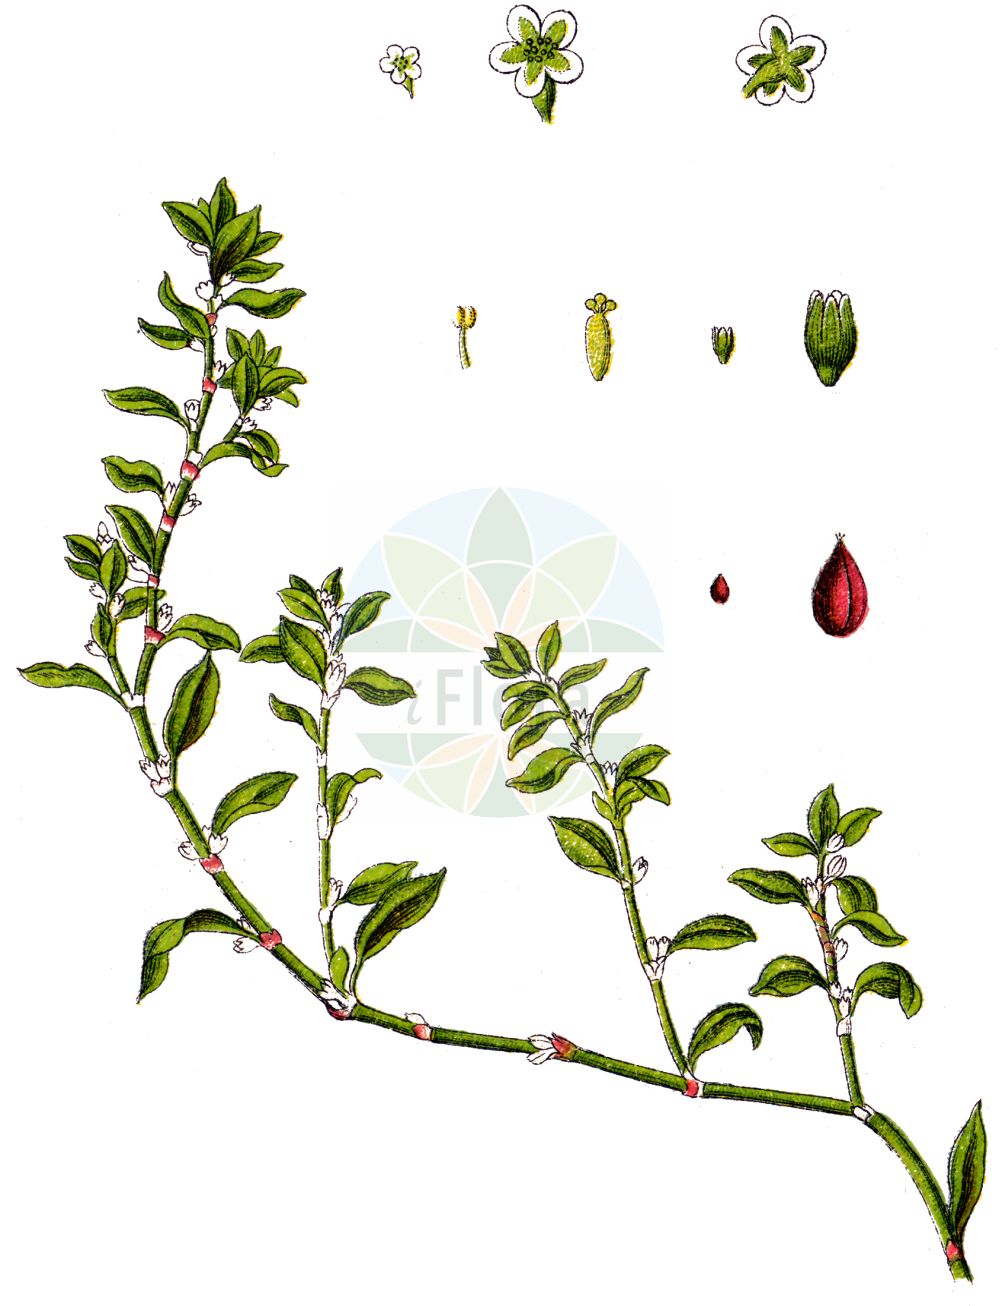 Historische Abbildung von Polygonum aviculare agg. (Vogelknöterich - Knotgrasses). Das Bild zeigt Blatt, Bluete, Frucht und Same. ---- Historical Drawing of Polygonum aviculare agg. (Vogelknöterich - Knotgrasses). The image is showing leaf, flower, fruit and seed.(Polygonum aviculare agg.,Vogelknöterich,Knotgrasses,Polygonum aviculare agg.,Vogelknoeterich,Vogel-Knoeterich,Gleichblaettriger Vogelknoeterich,Kleinfruechtiger Gleichblaettriger Vogelknoeterich,Knotgrasses,Common Knotweed,Common Knotgrass,Oval-leaf Knotweed,Knotgrass,Prostrate Knotweed,Wireweed,Polygonum,Knöterich,Knotgrass,Polygonaceae,Knöterichgewächse,Knotgrass family,Blatt,Bluete,Frucht,Same,leaf,flower,fruit,seed,Sturm (1796f))